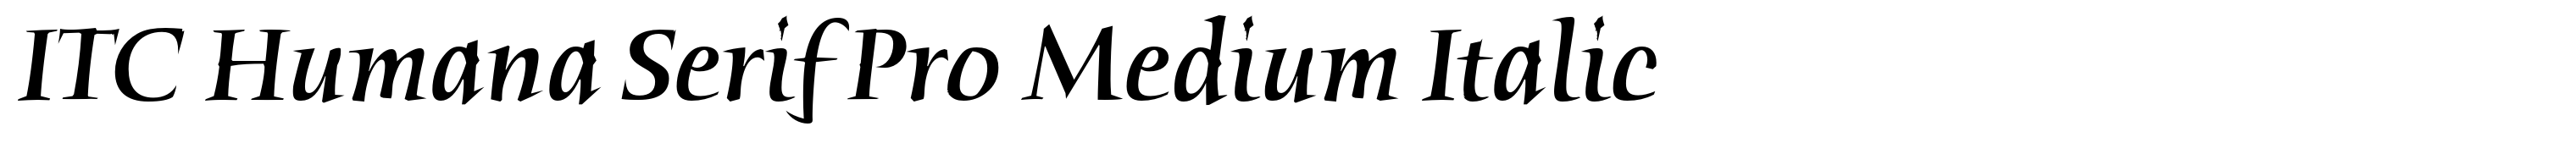 ITC Humana Serif Pro Medium Italic